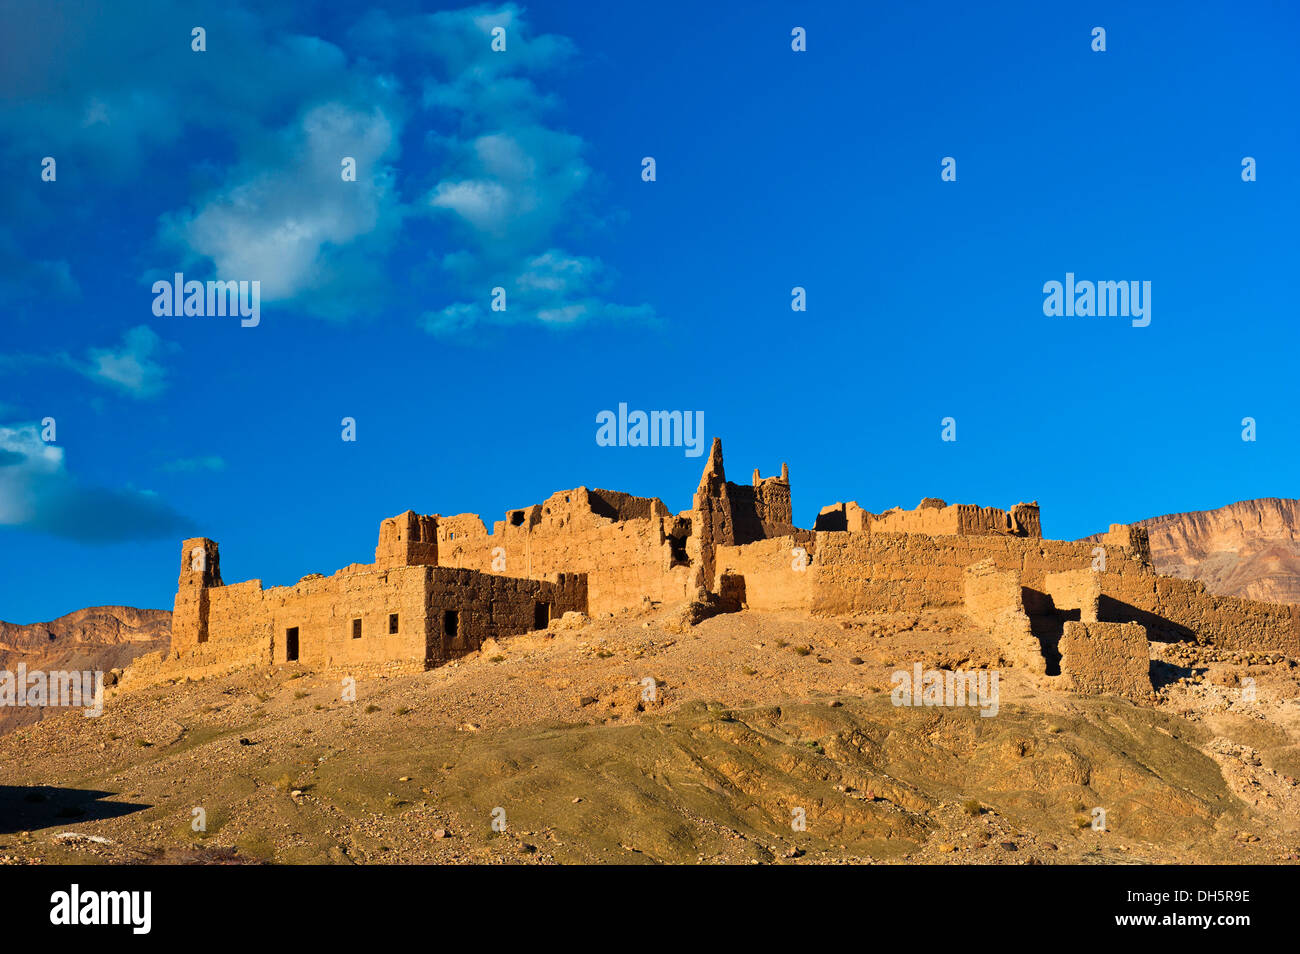 Kasbah en ruine sur une colline, forteresse de brique de boue du peuple Berbère, vallée du Drâa, sud du Maroc, Maroc, Afrique Banque D'Images